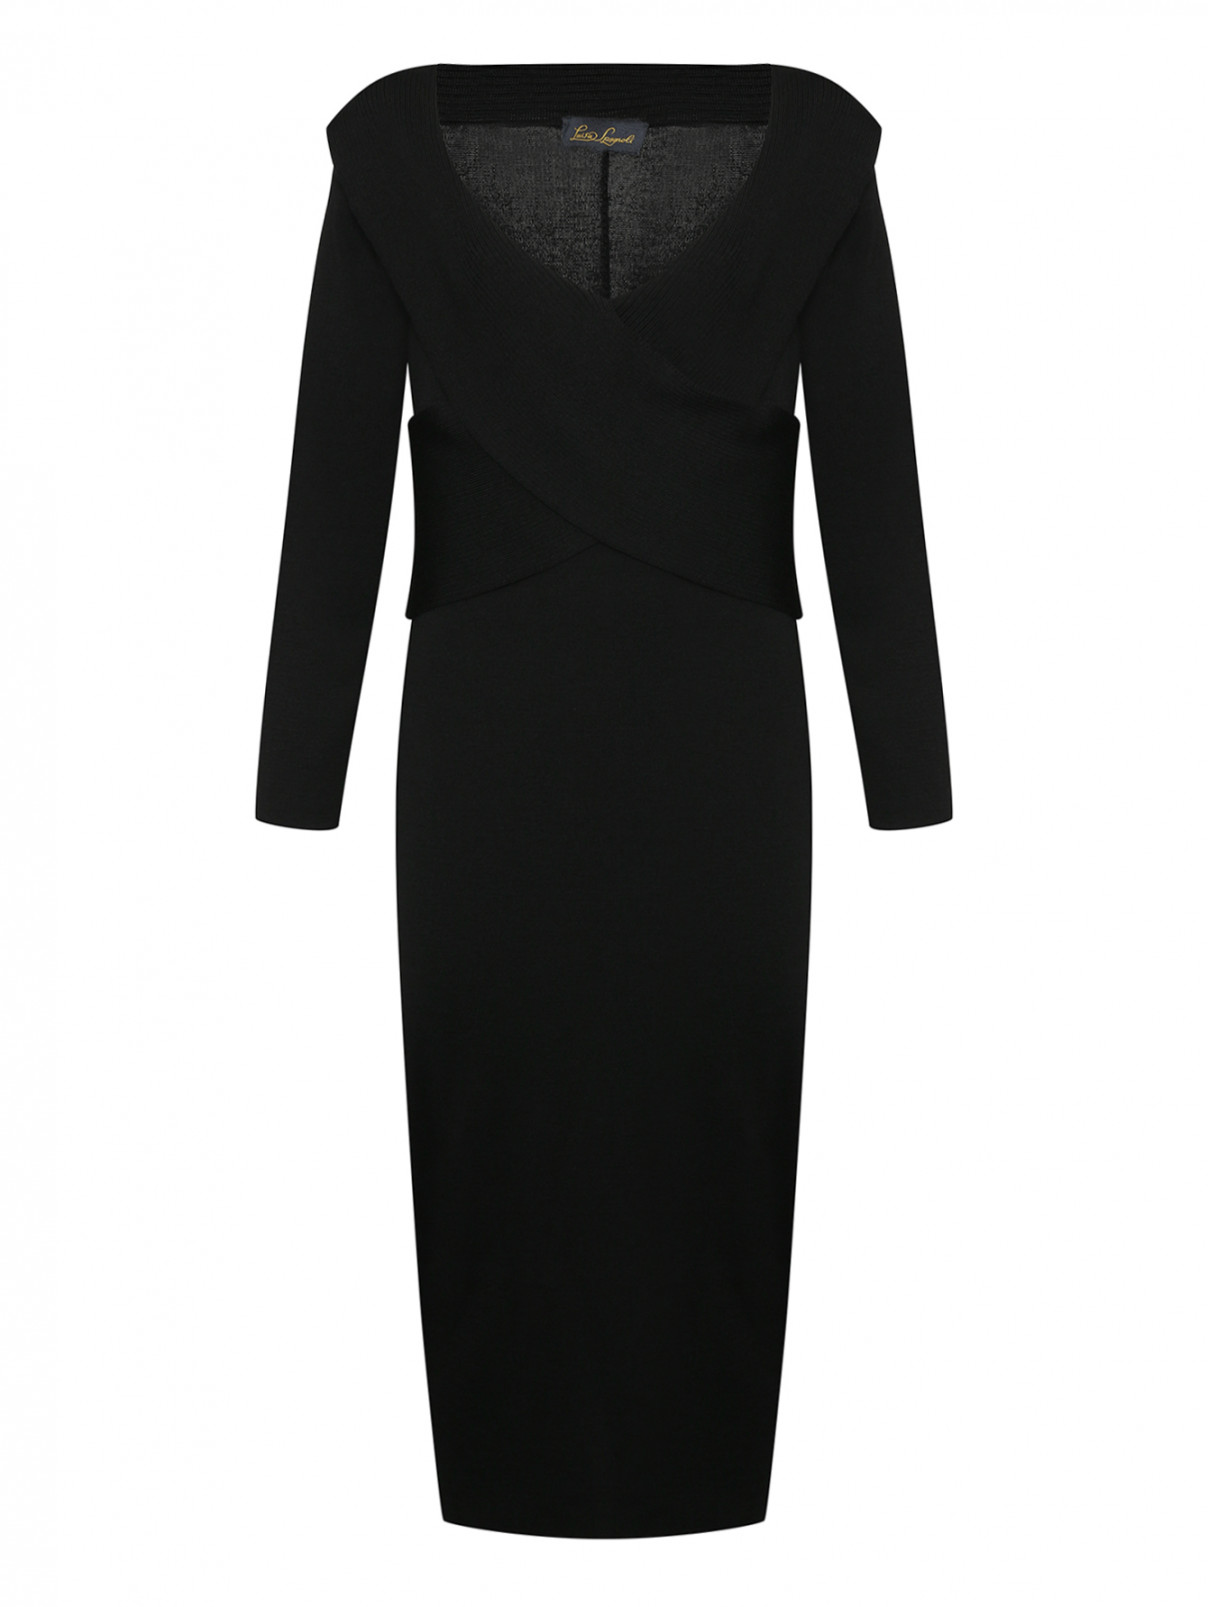 Платье-миди из чистой шерсти Luisa Spagnoli  –  Общий вид  – Цвет:  Черный